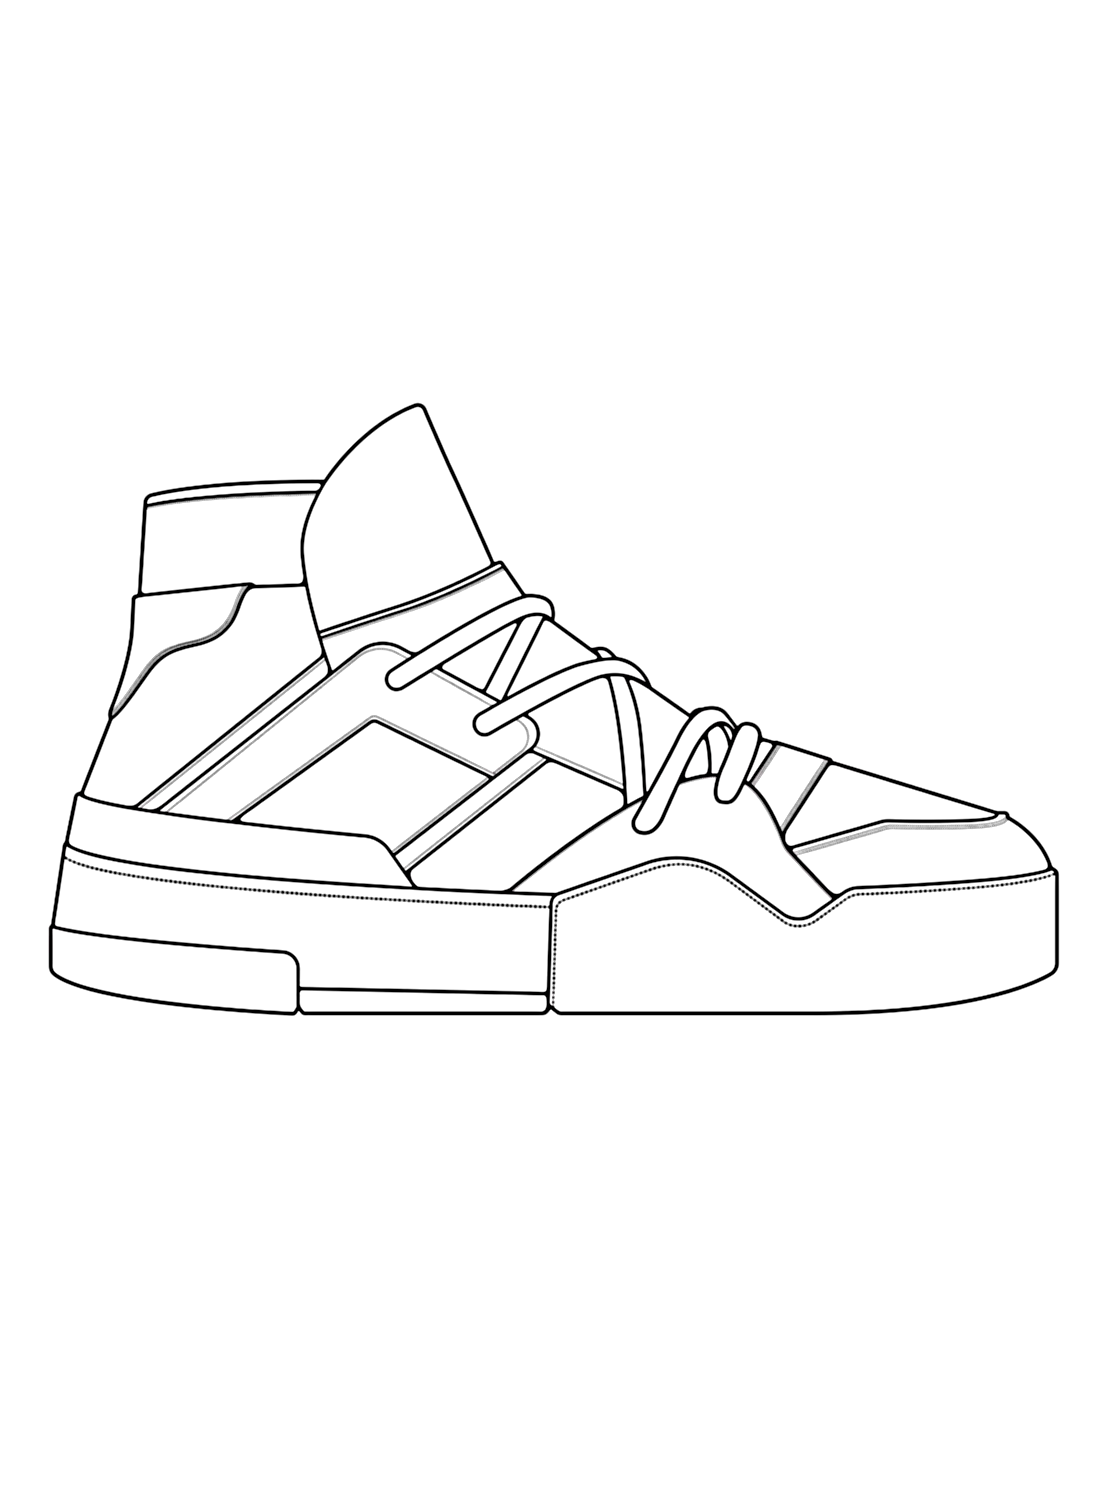 Immagine da colorare di sneaker da Shoe